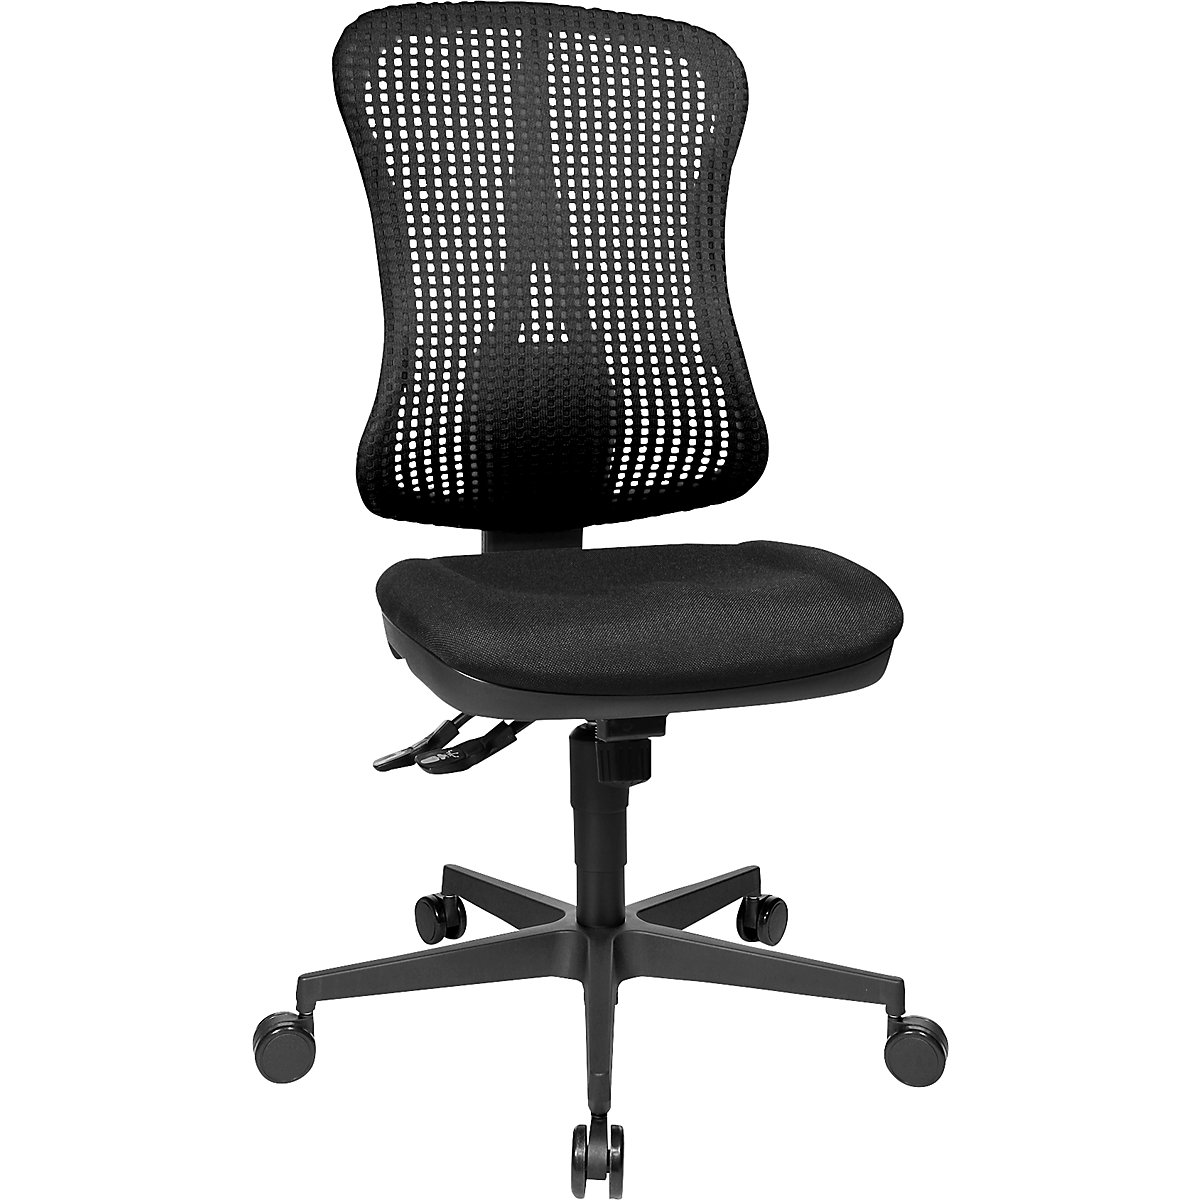 Silla giratoria ergonómica con asiento moldeado – Topstar, sin brazos, asiento negro, retícula del respaldo negra-10